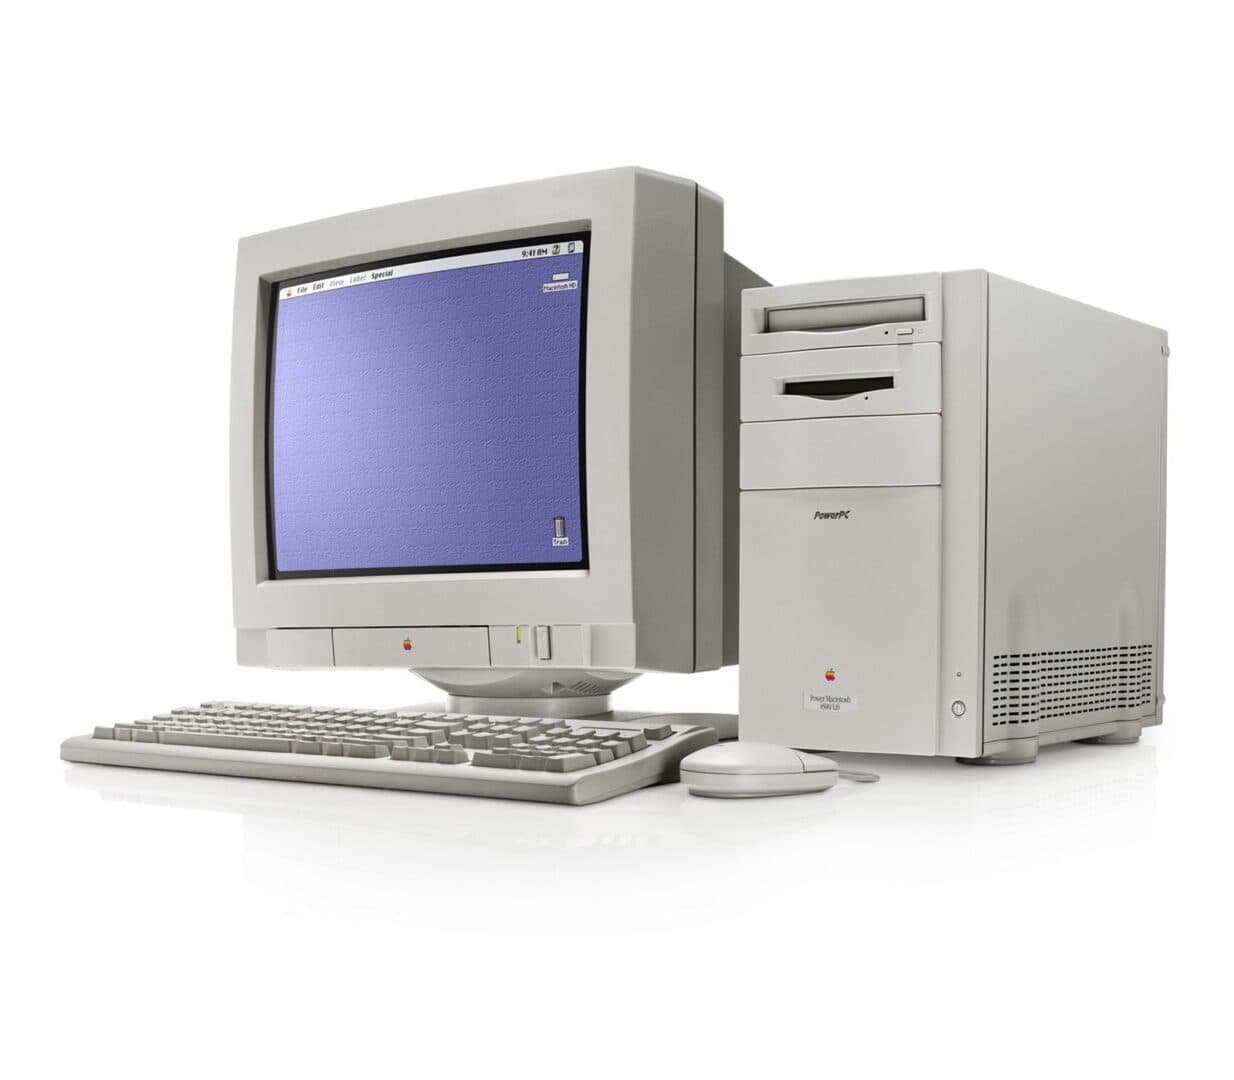 Power Macintosh 8500